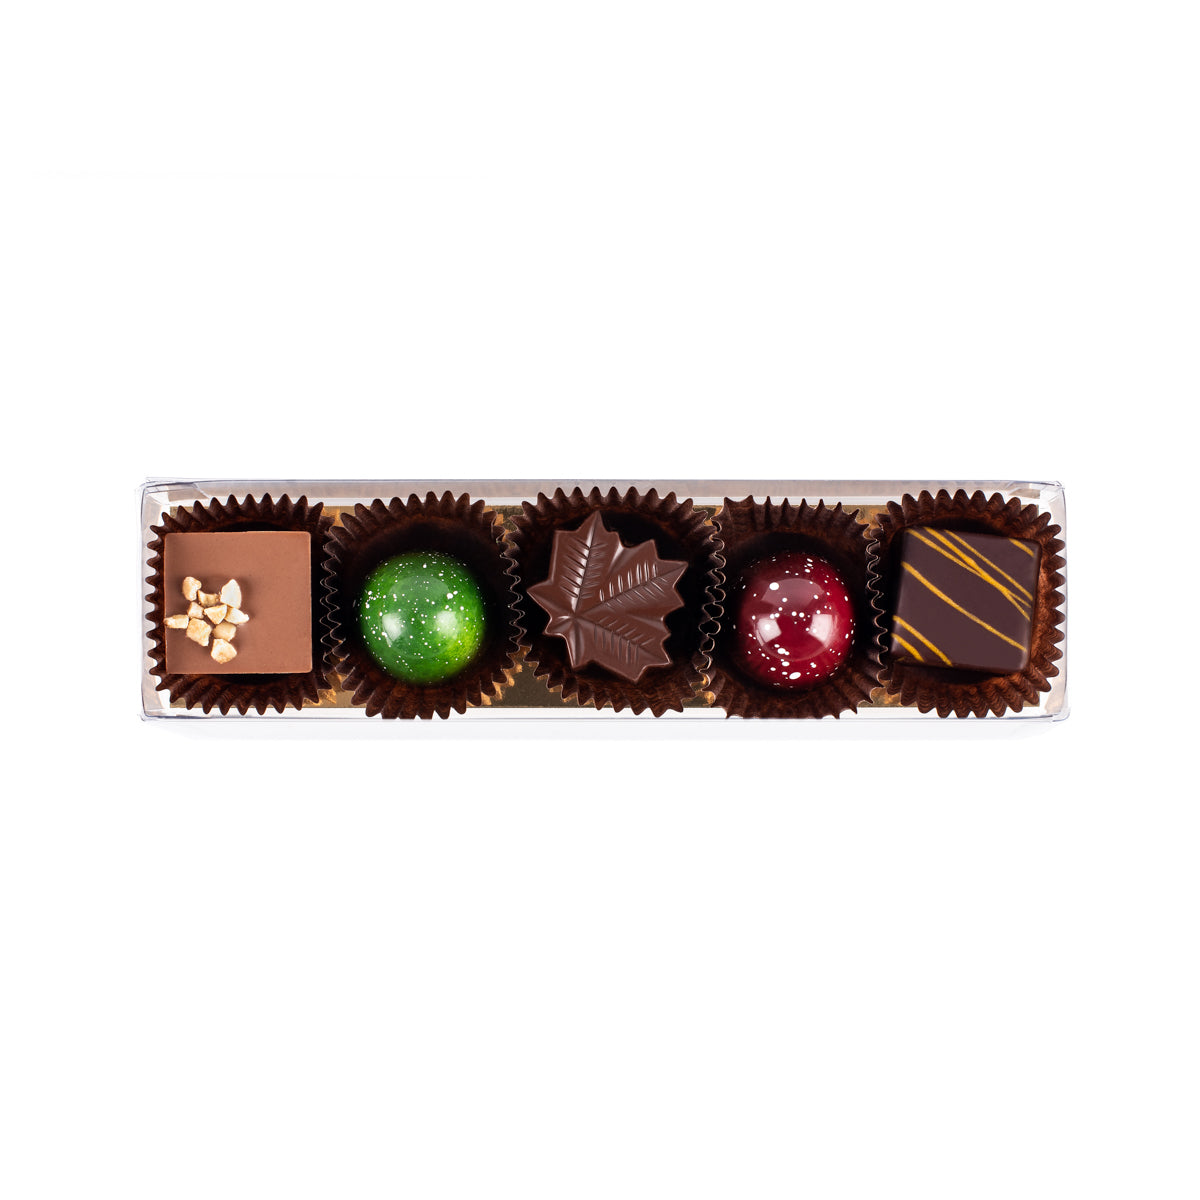 Boîte de 4 chocolats assortis - Chocolat Boréal